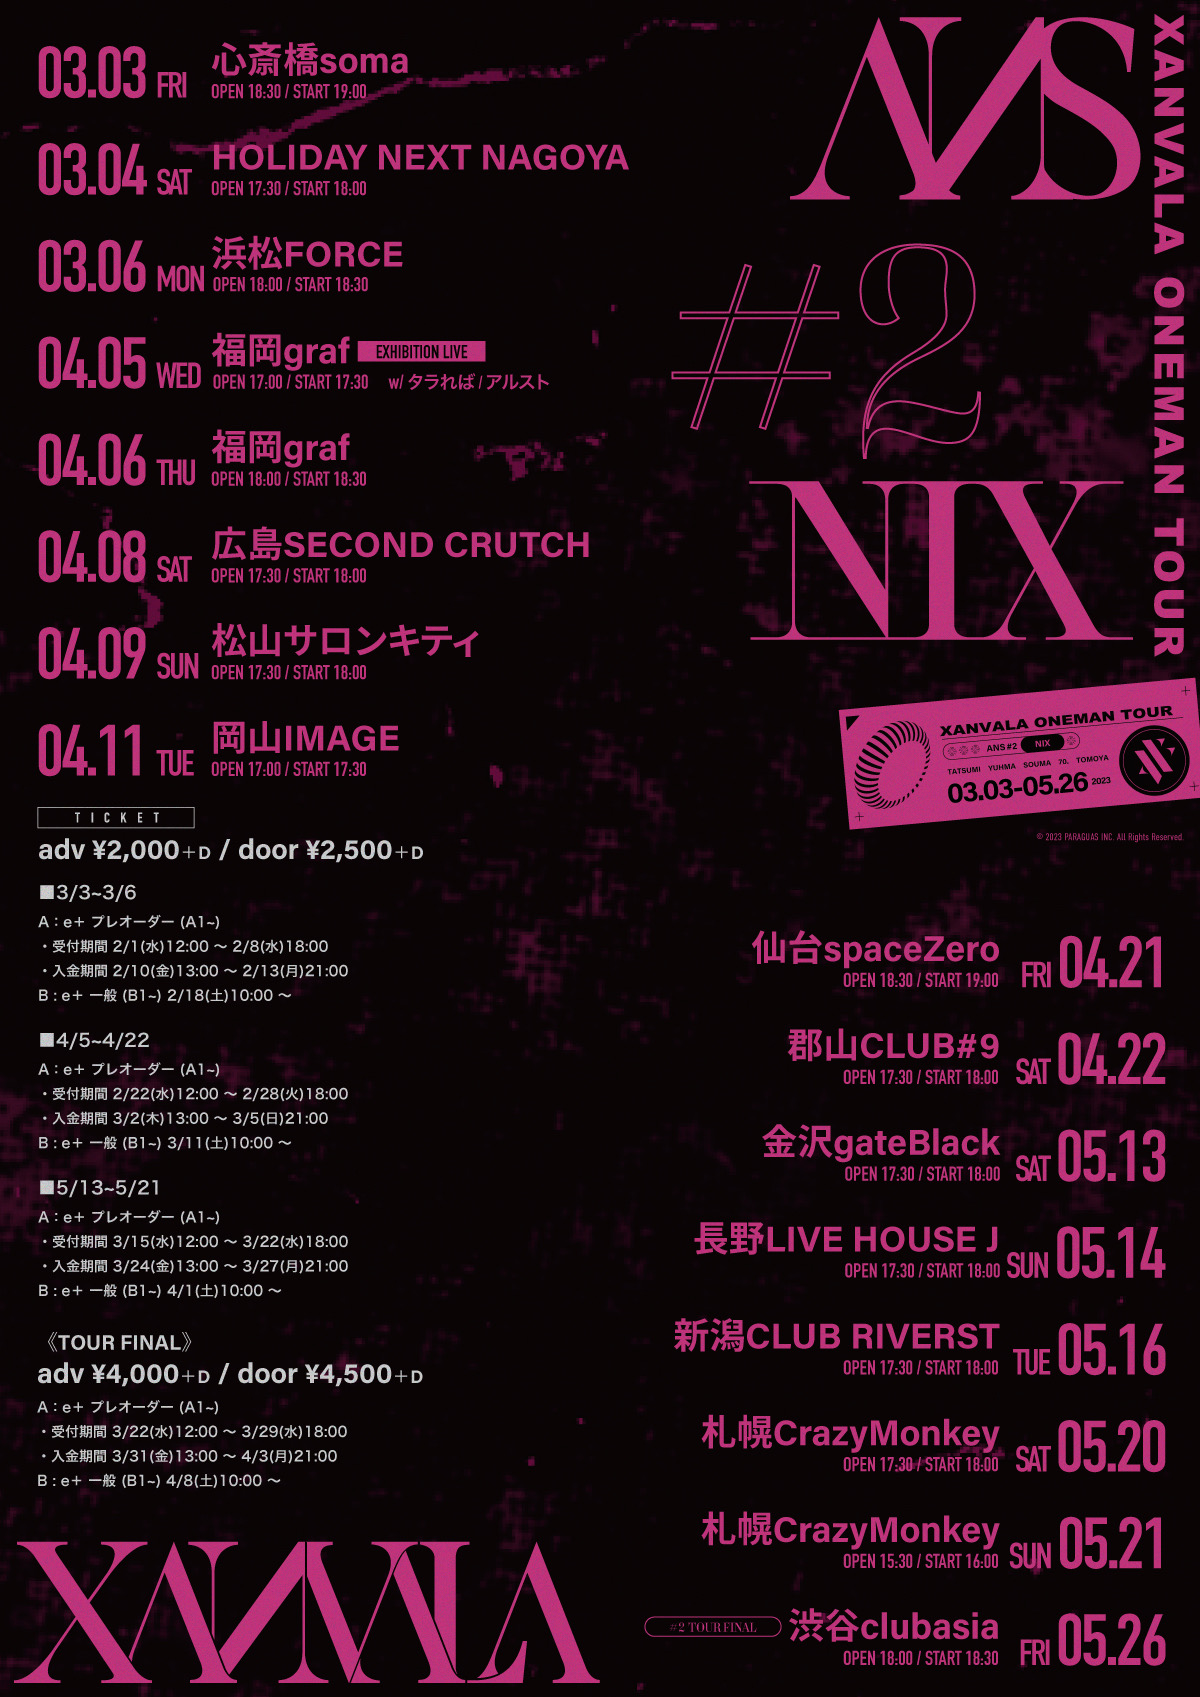 XANVALA ONEMAN TOUR「ANS」#2 "NIX"